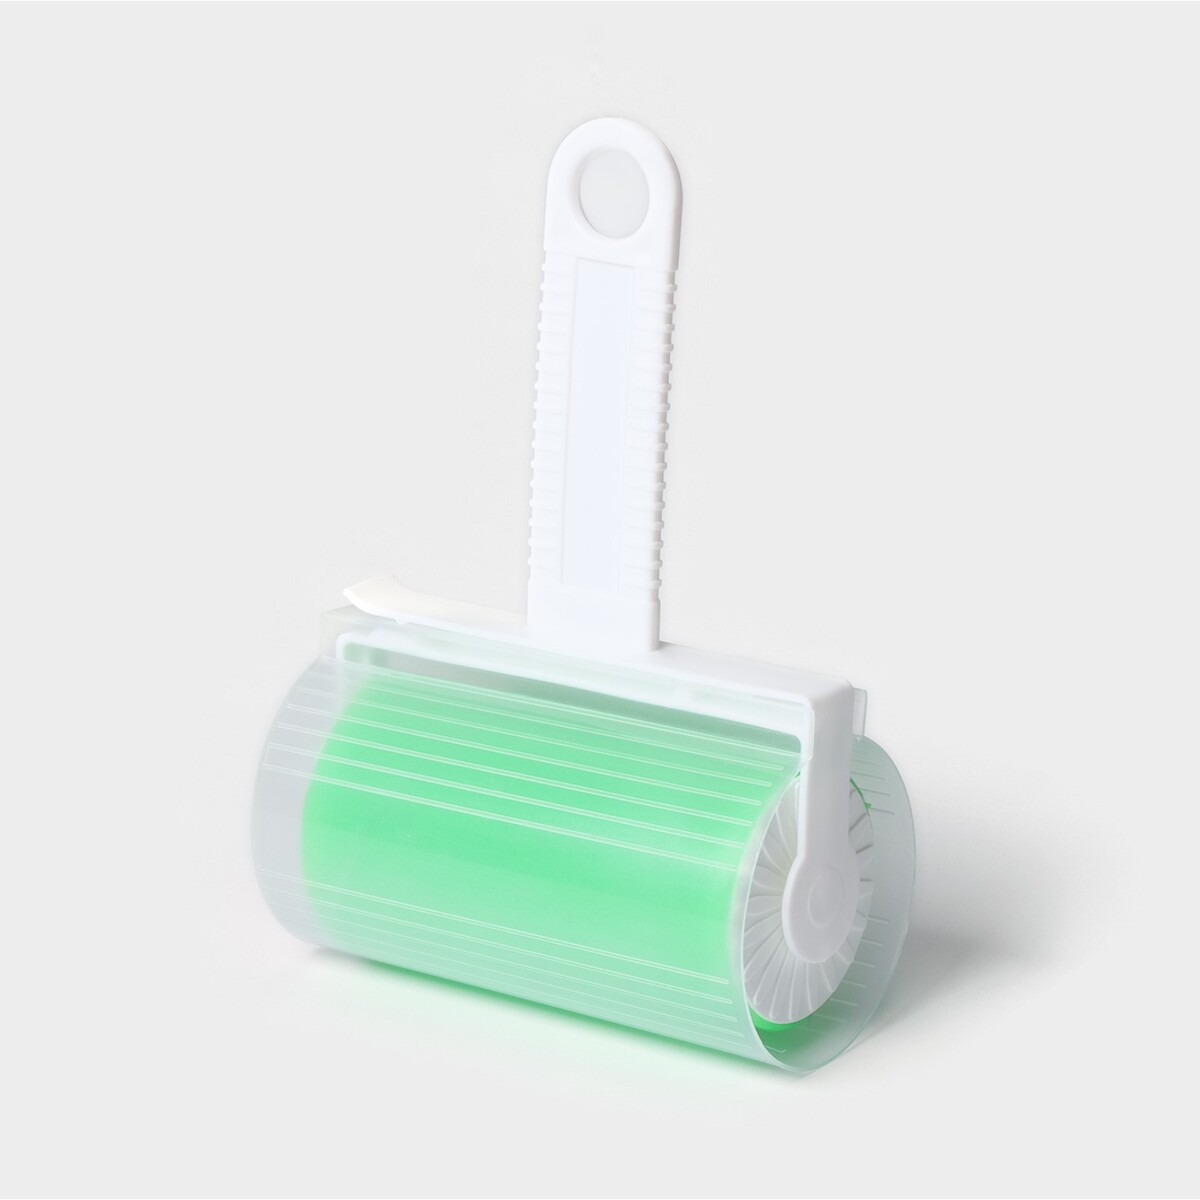 Ролик для чистки одежды в футляре силиконовый, 17×11×6 см, цвет зеленый ролик для чистки одежды доляна 2 сменных блока по 20 листов